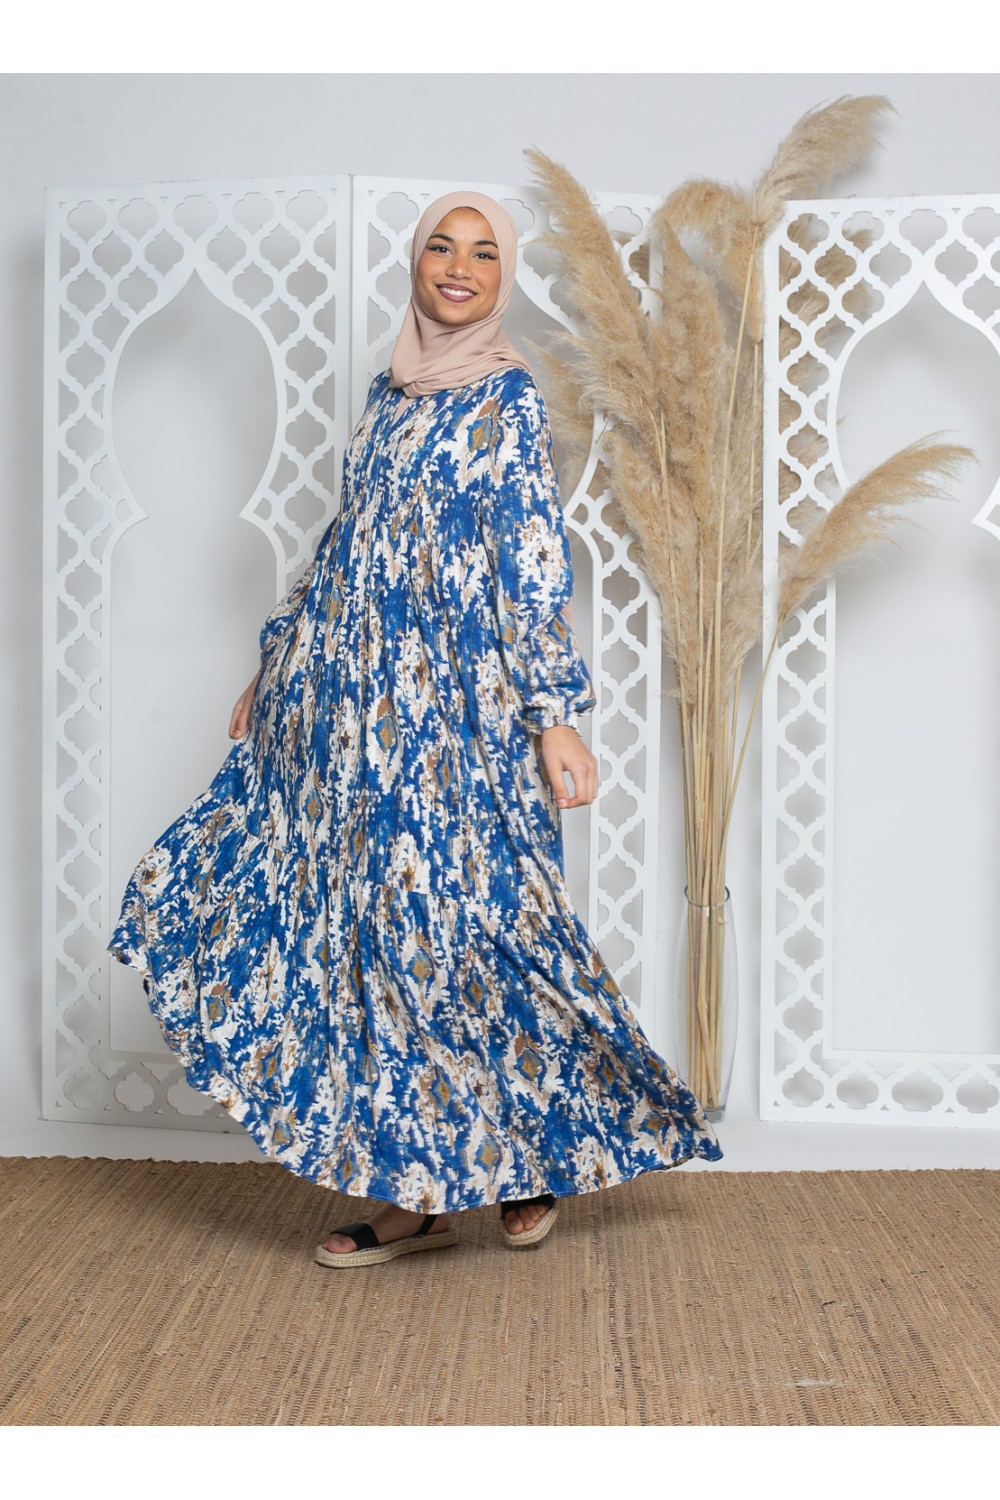 Robe bohème évasée en viscose printemps été pour femme musulmane.